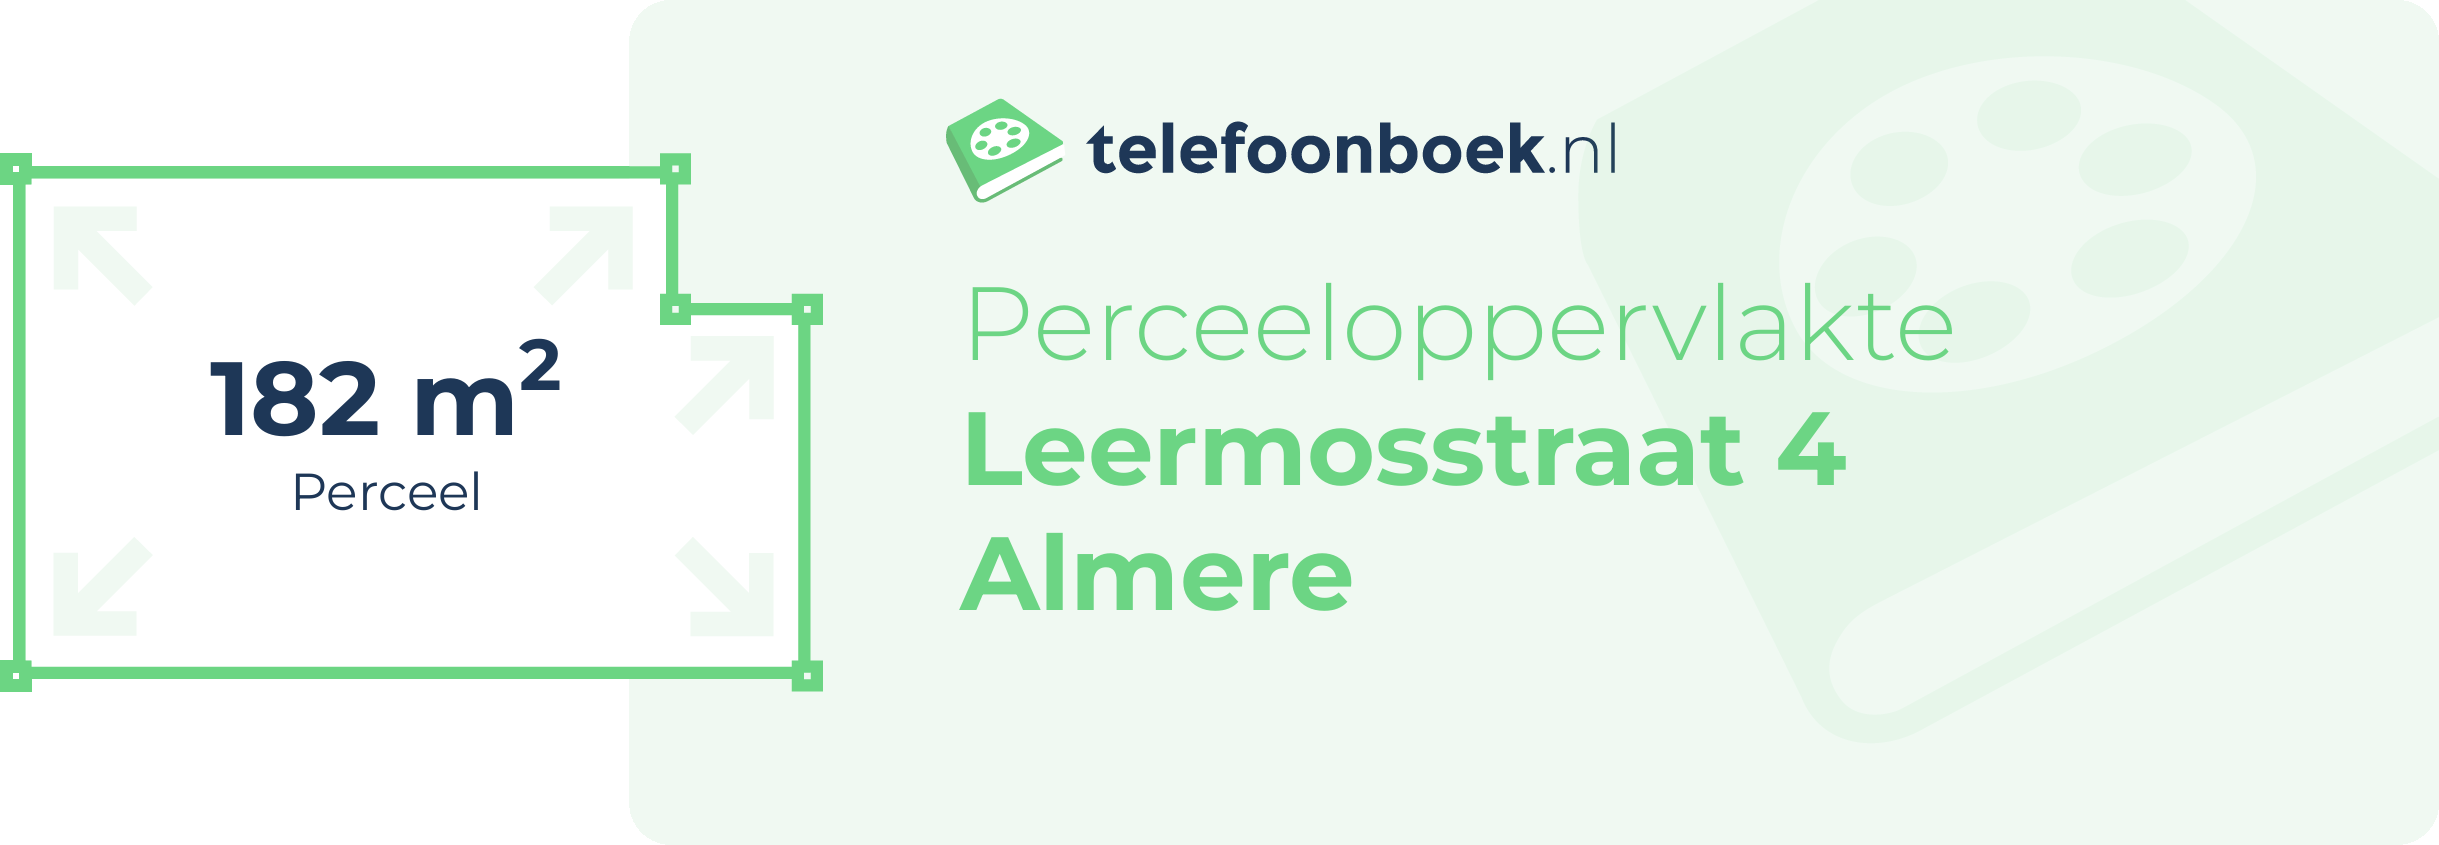 Perceeloppervlakte Leermosstraat 4 Almere